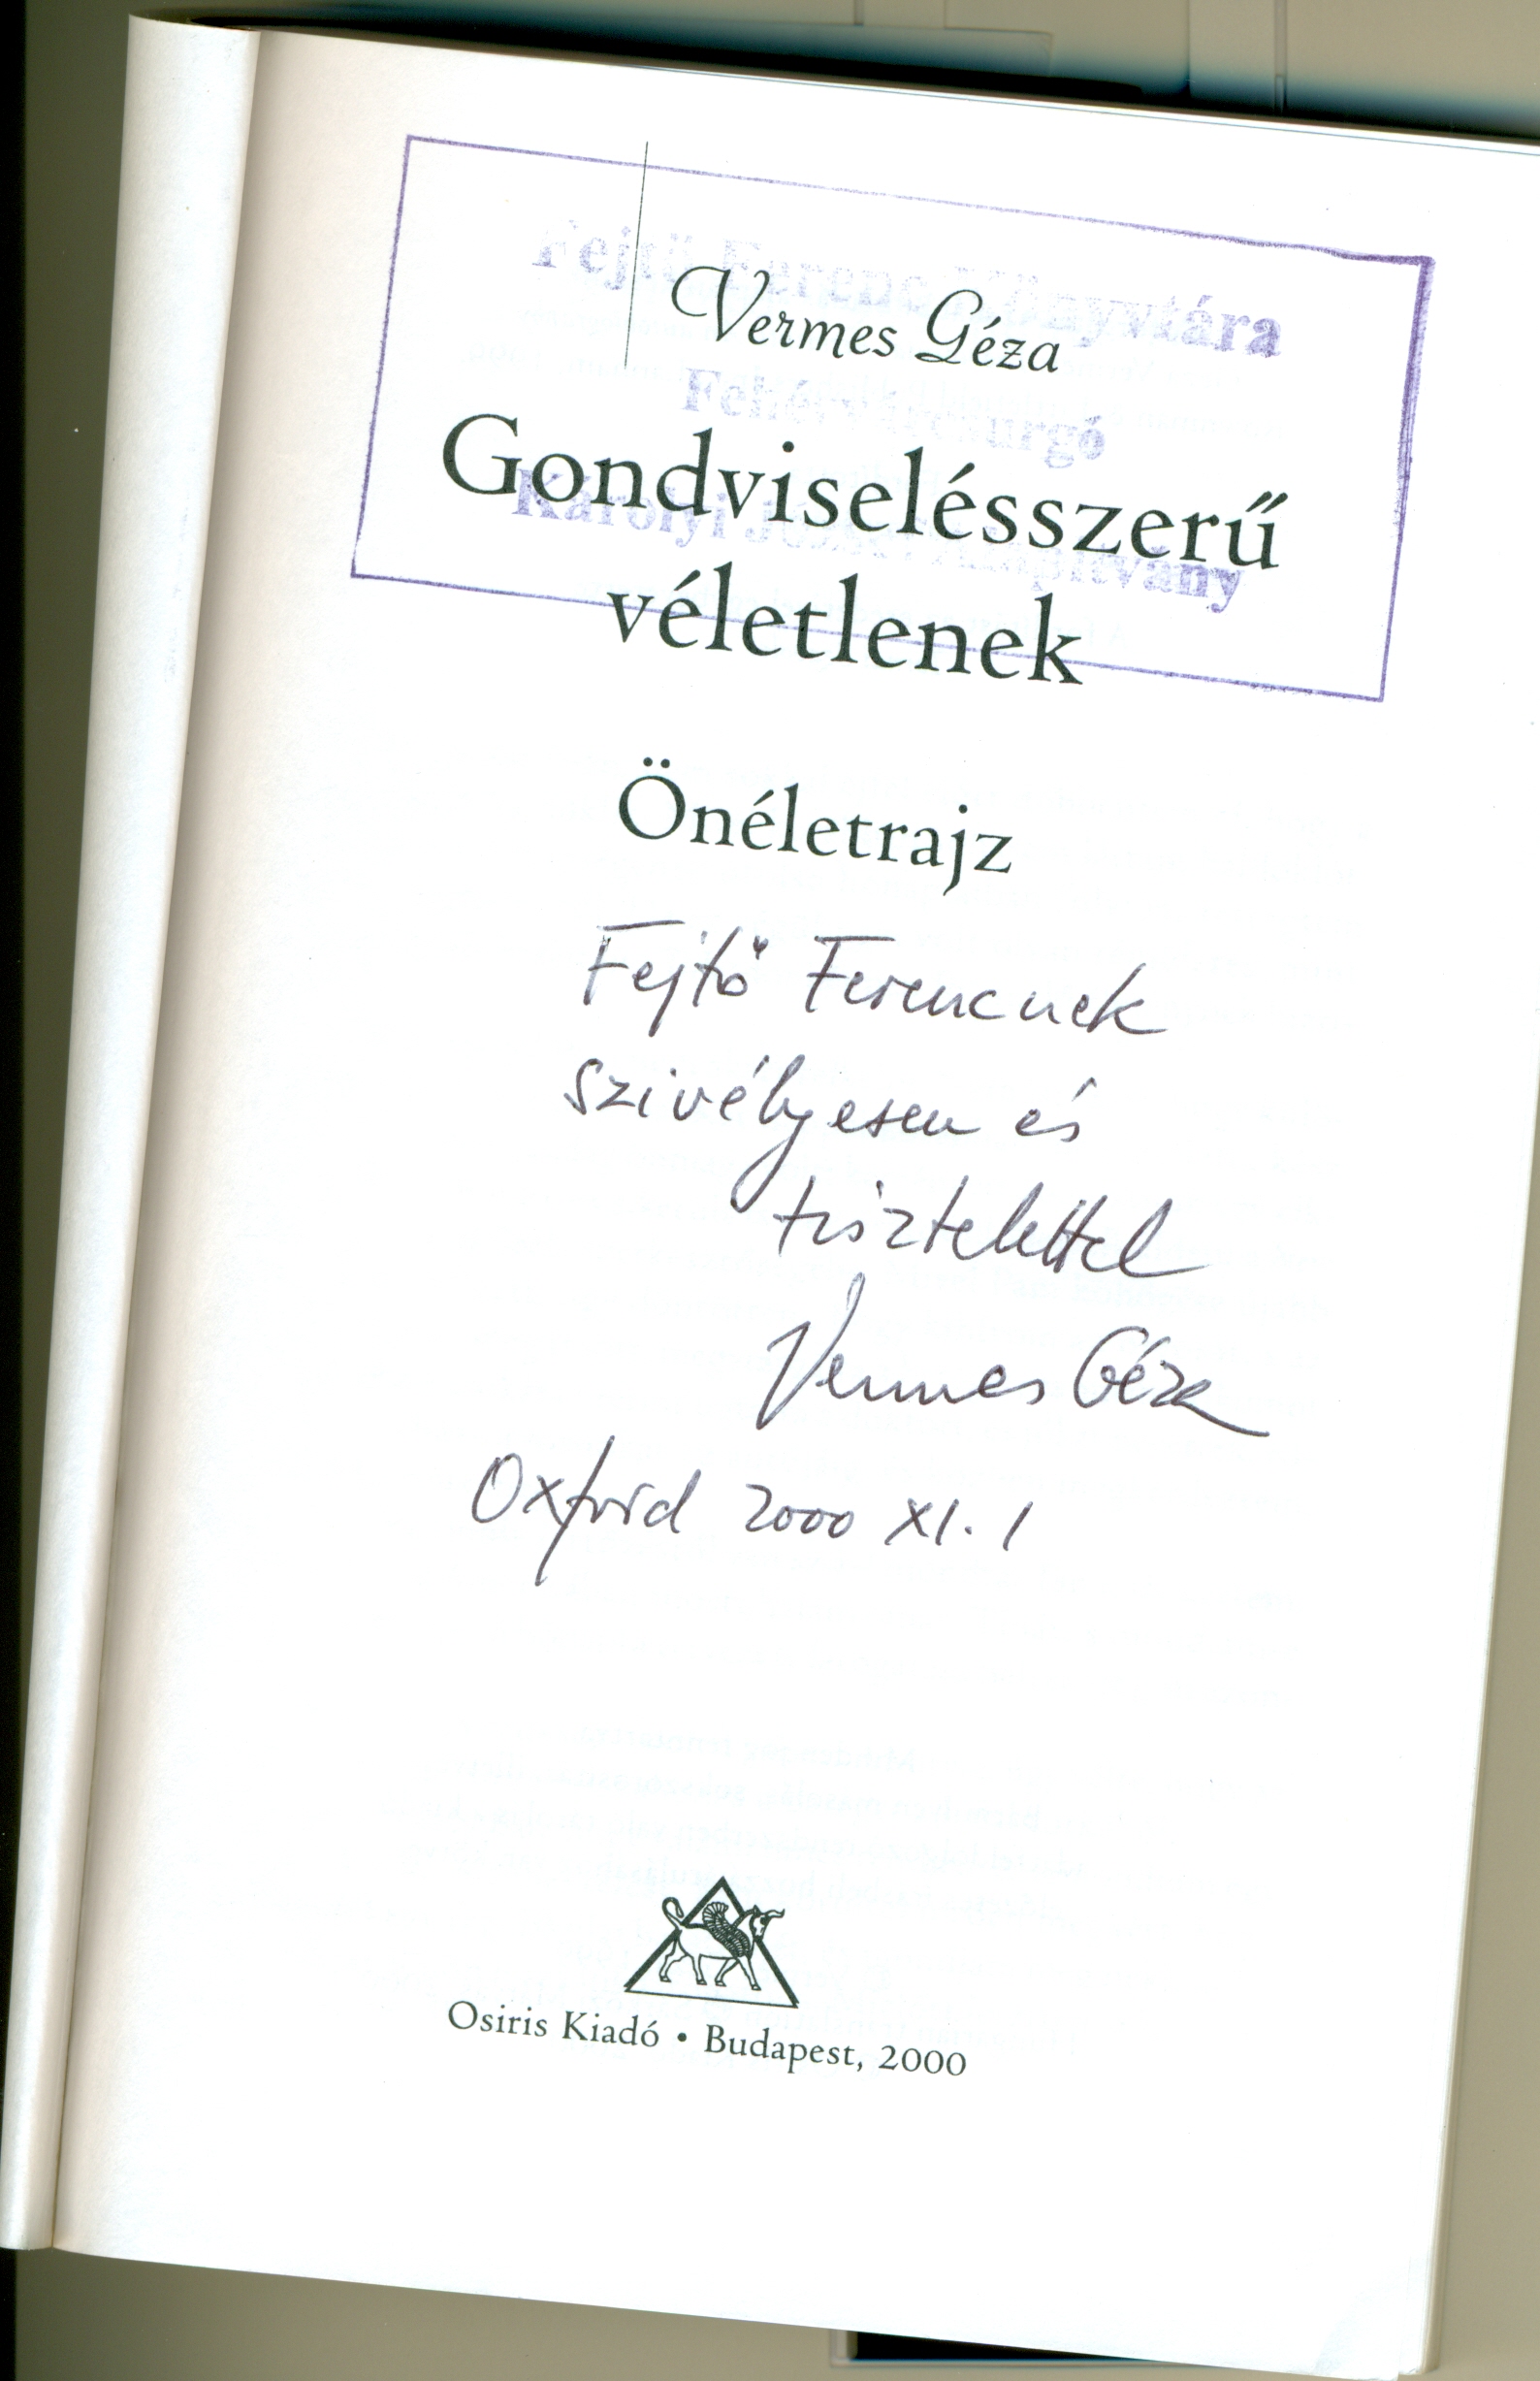 Vermes Géza dedikációja Fejtő Ferencnek, 2000.